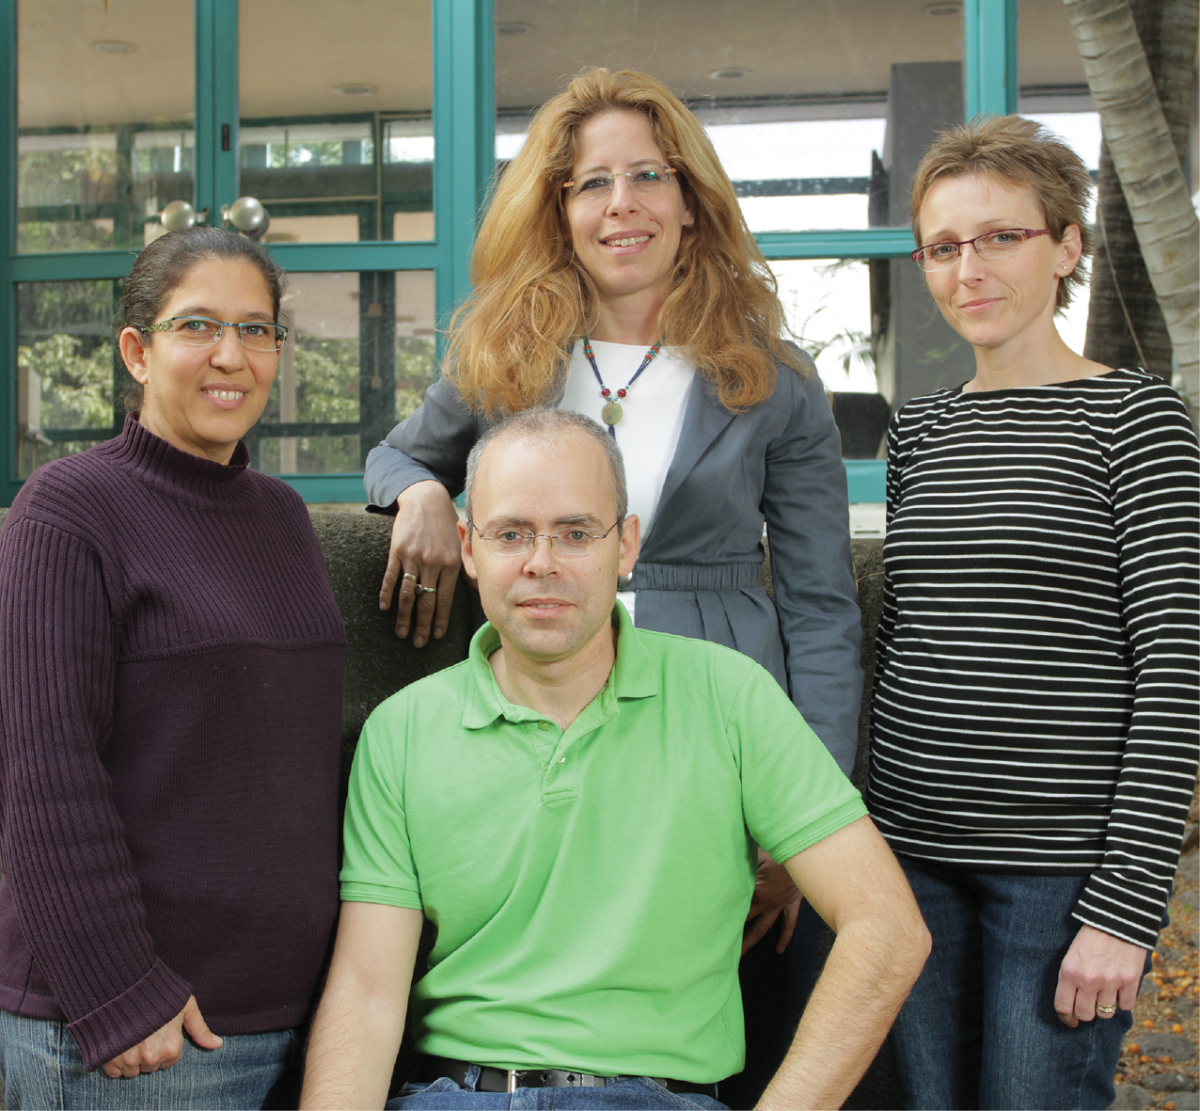 מימין: מריה פוזשי לוי, ד"ר מיכל שרון, ישי לוין וגילי בן-ניסן. גמישות